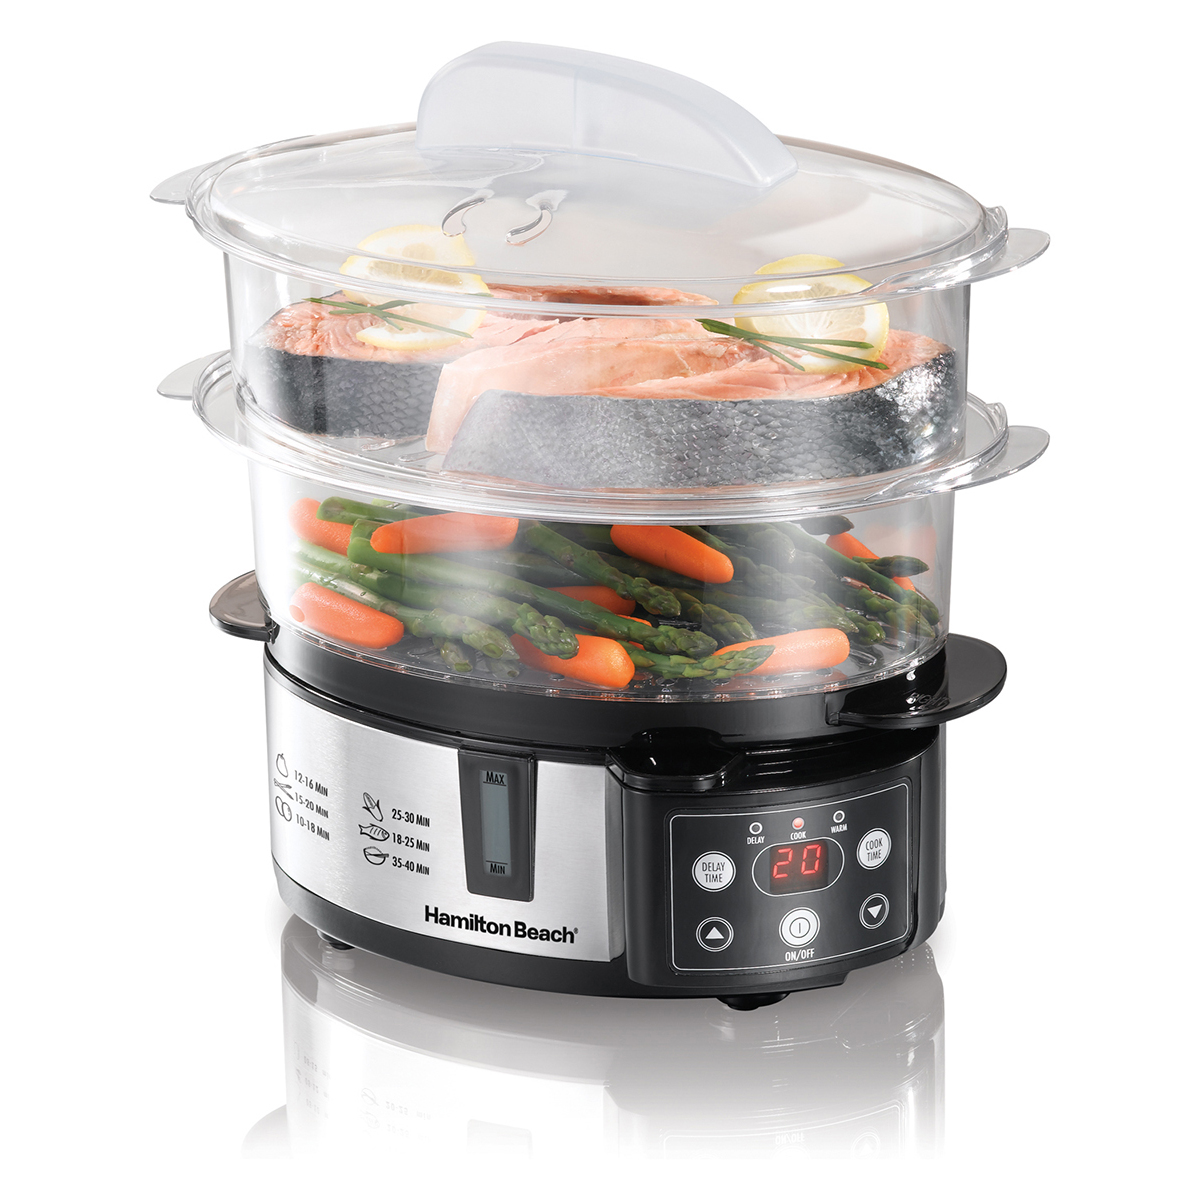 Digital Two-Tier Food Steamer (37537)